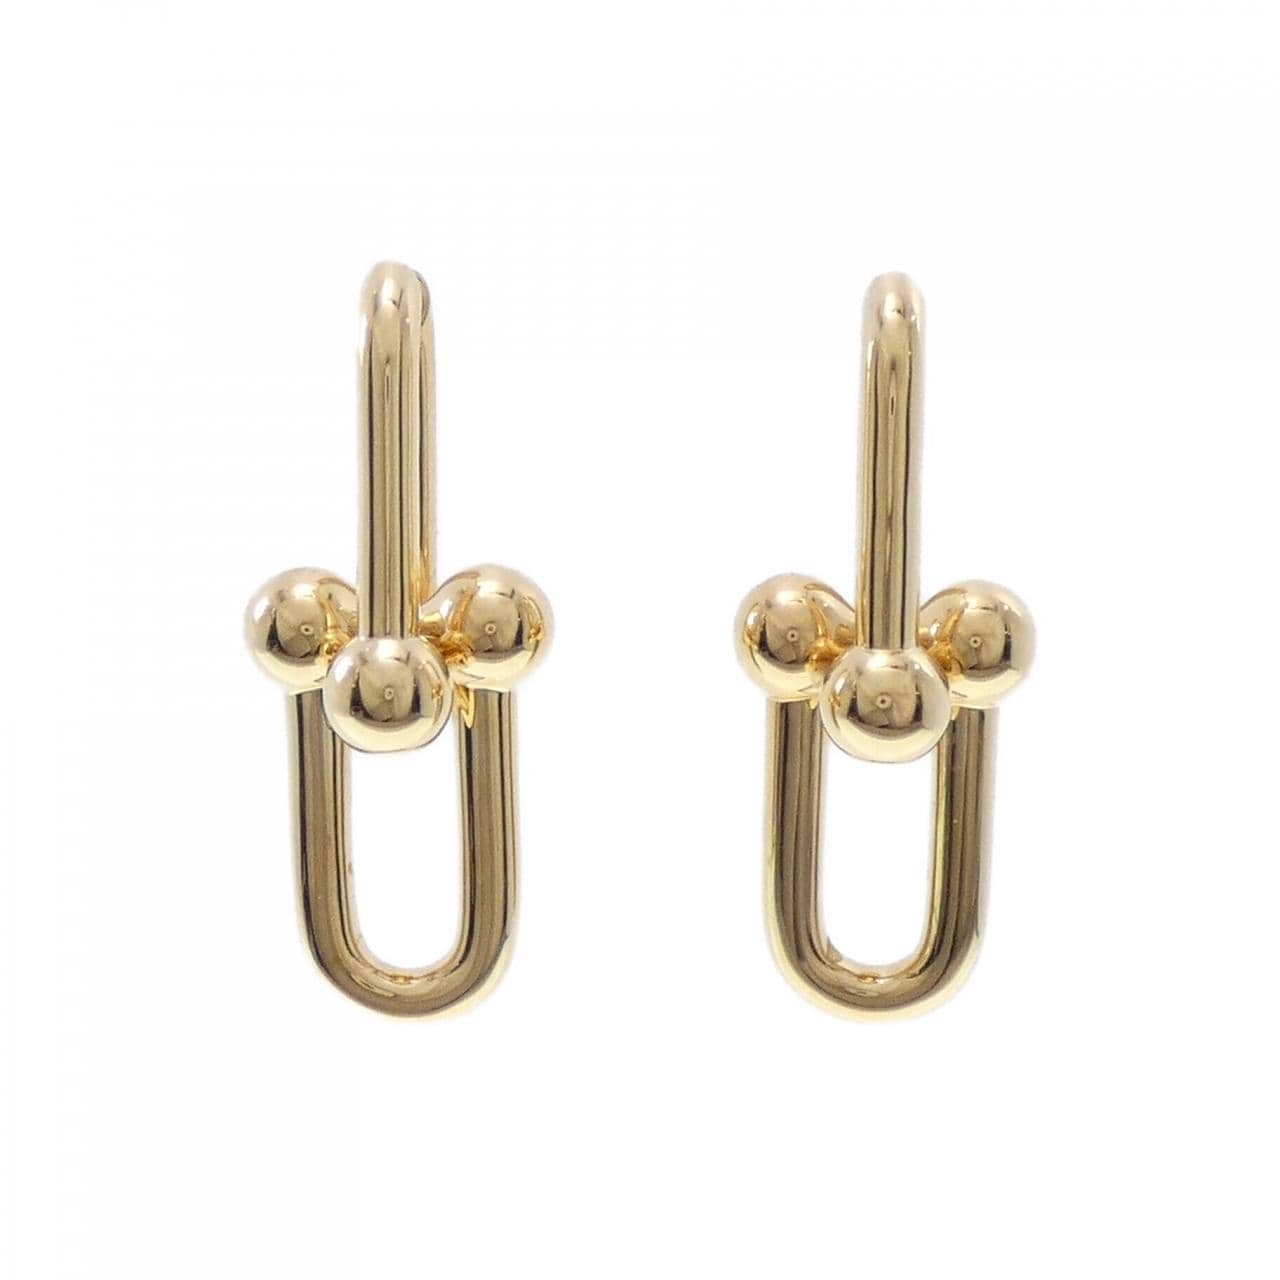 TIFFANY ring earrings